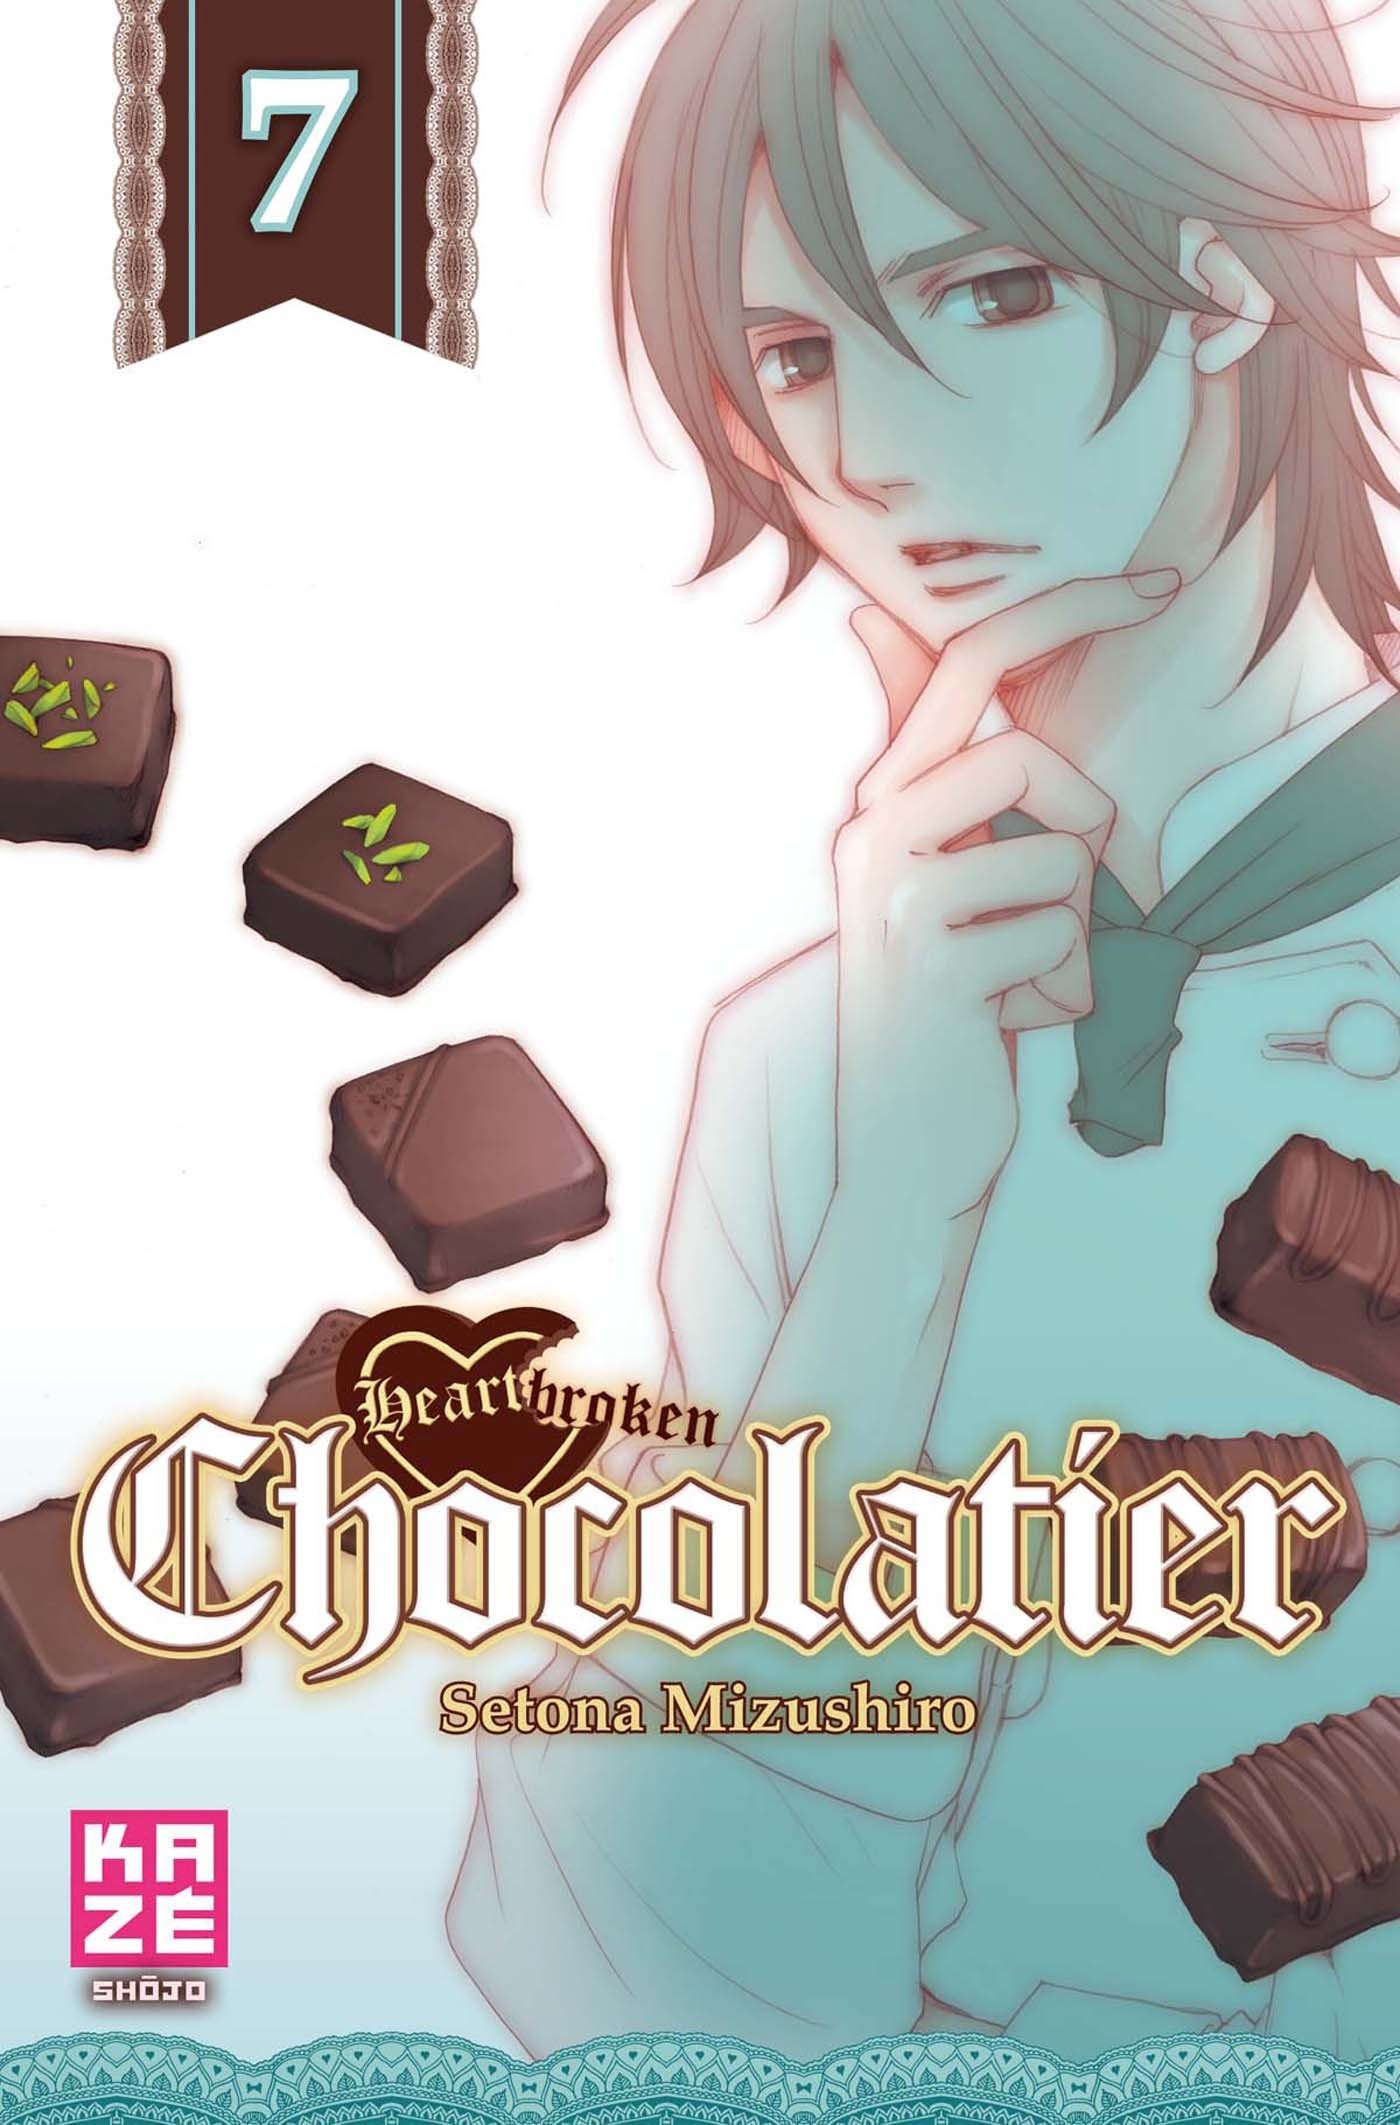 heartbrokenchocolatier7